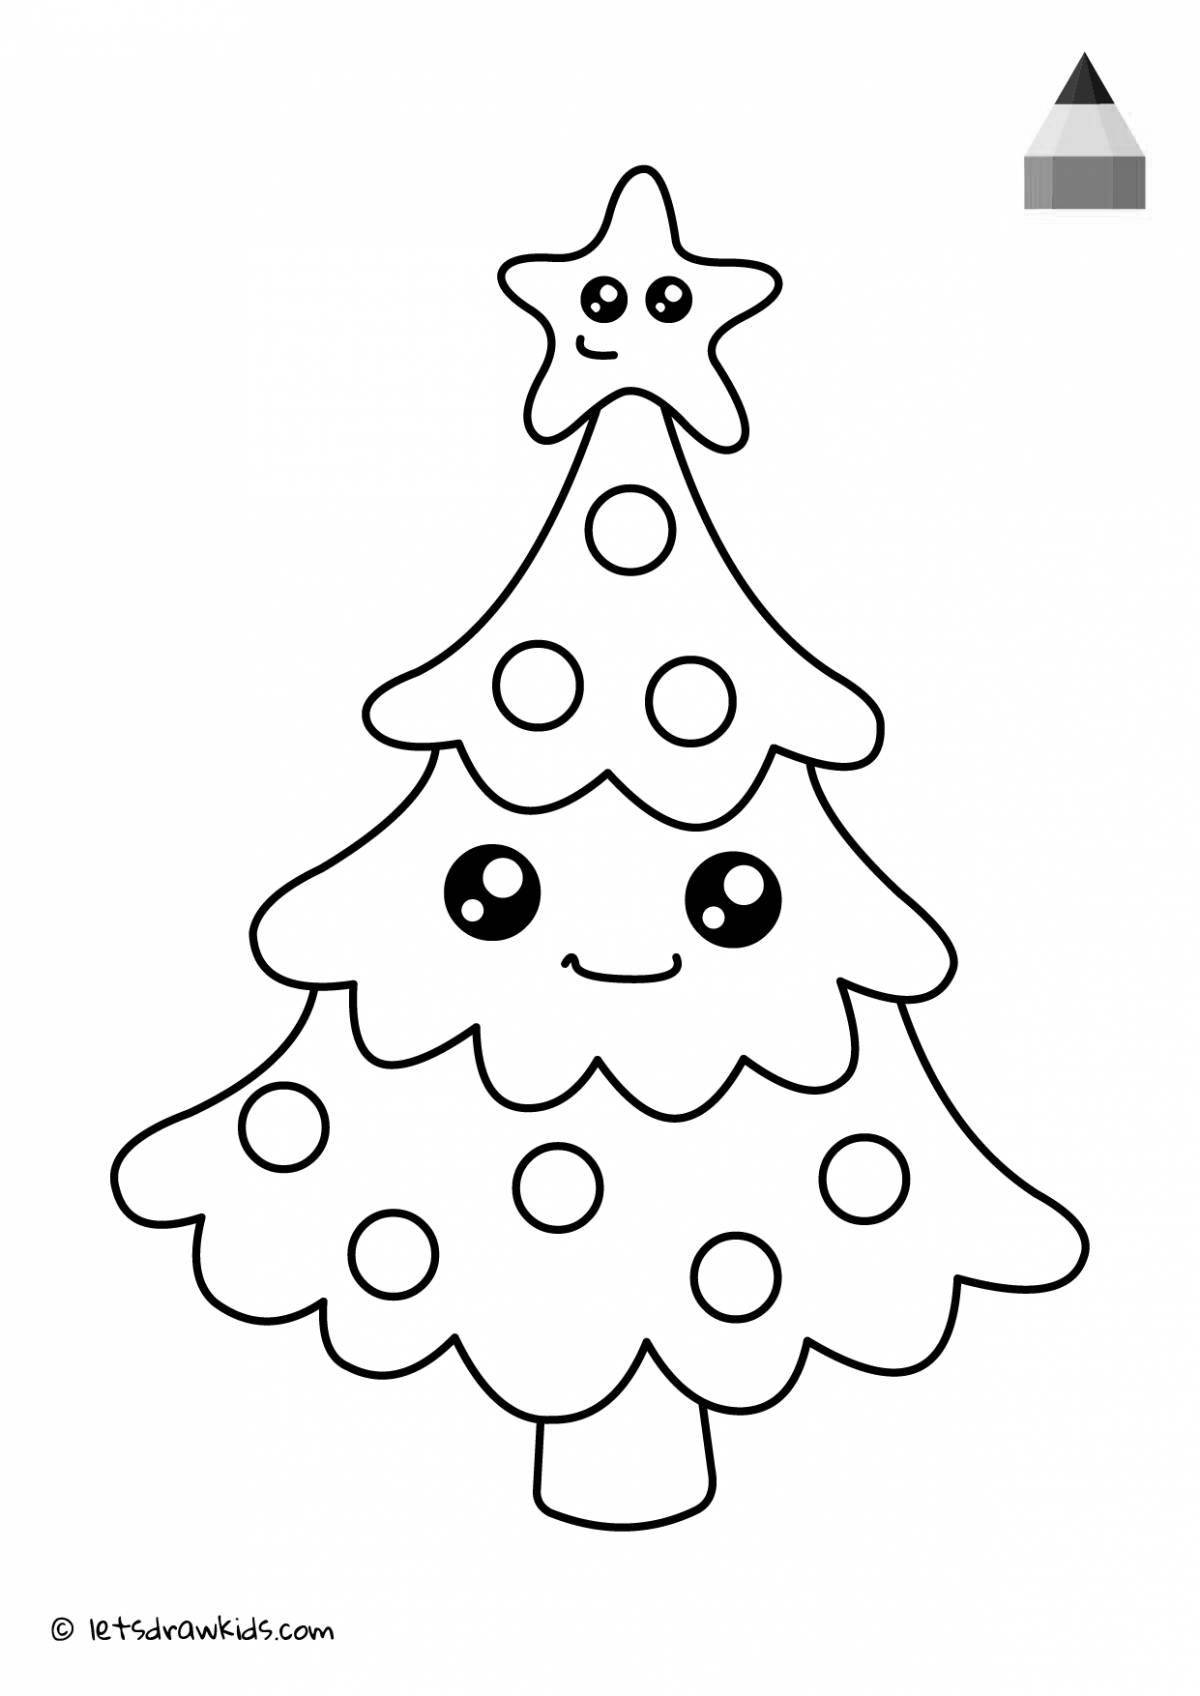 Увлекательная раскраска «рождественская елка» для самых маленьких